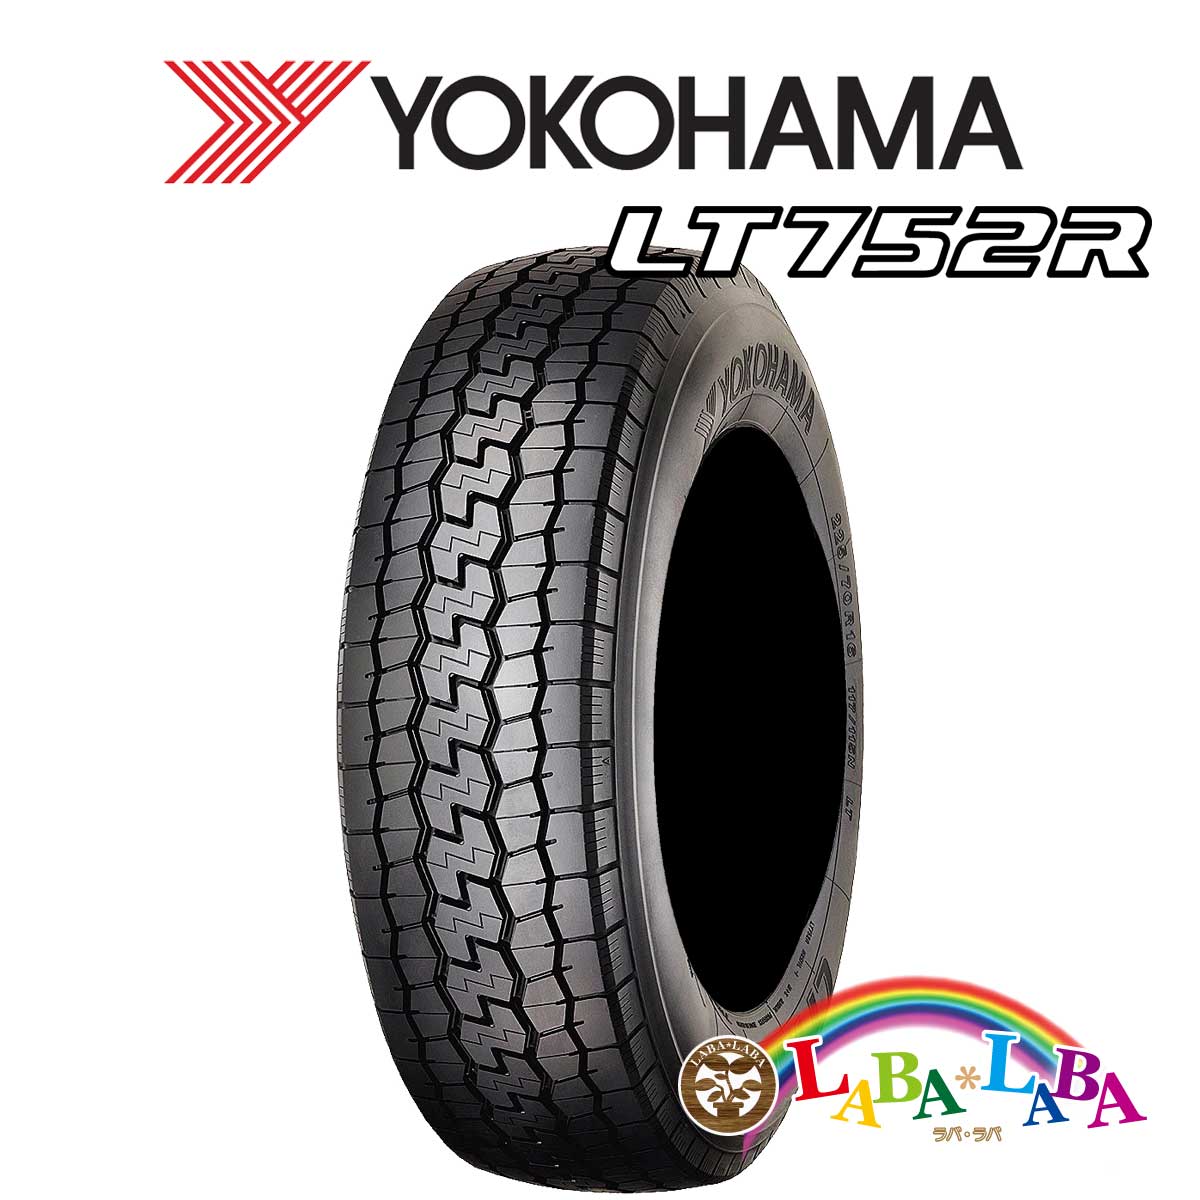 送料無料 輸入タイヤ サマータイヤ 新品 タイヤのみ 4本SET YOKOHAMA ヨコハマ バン 4本セット 205 118N LT LT752R 120 80R17.5 特別送料無料 福袋